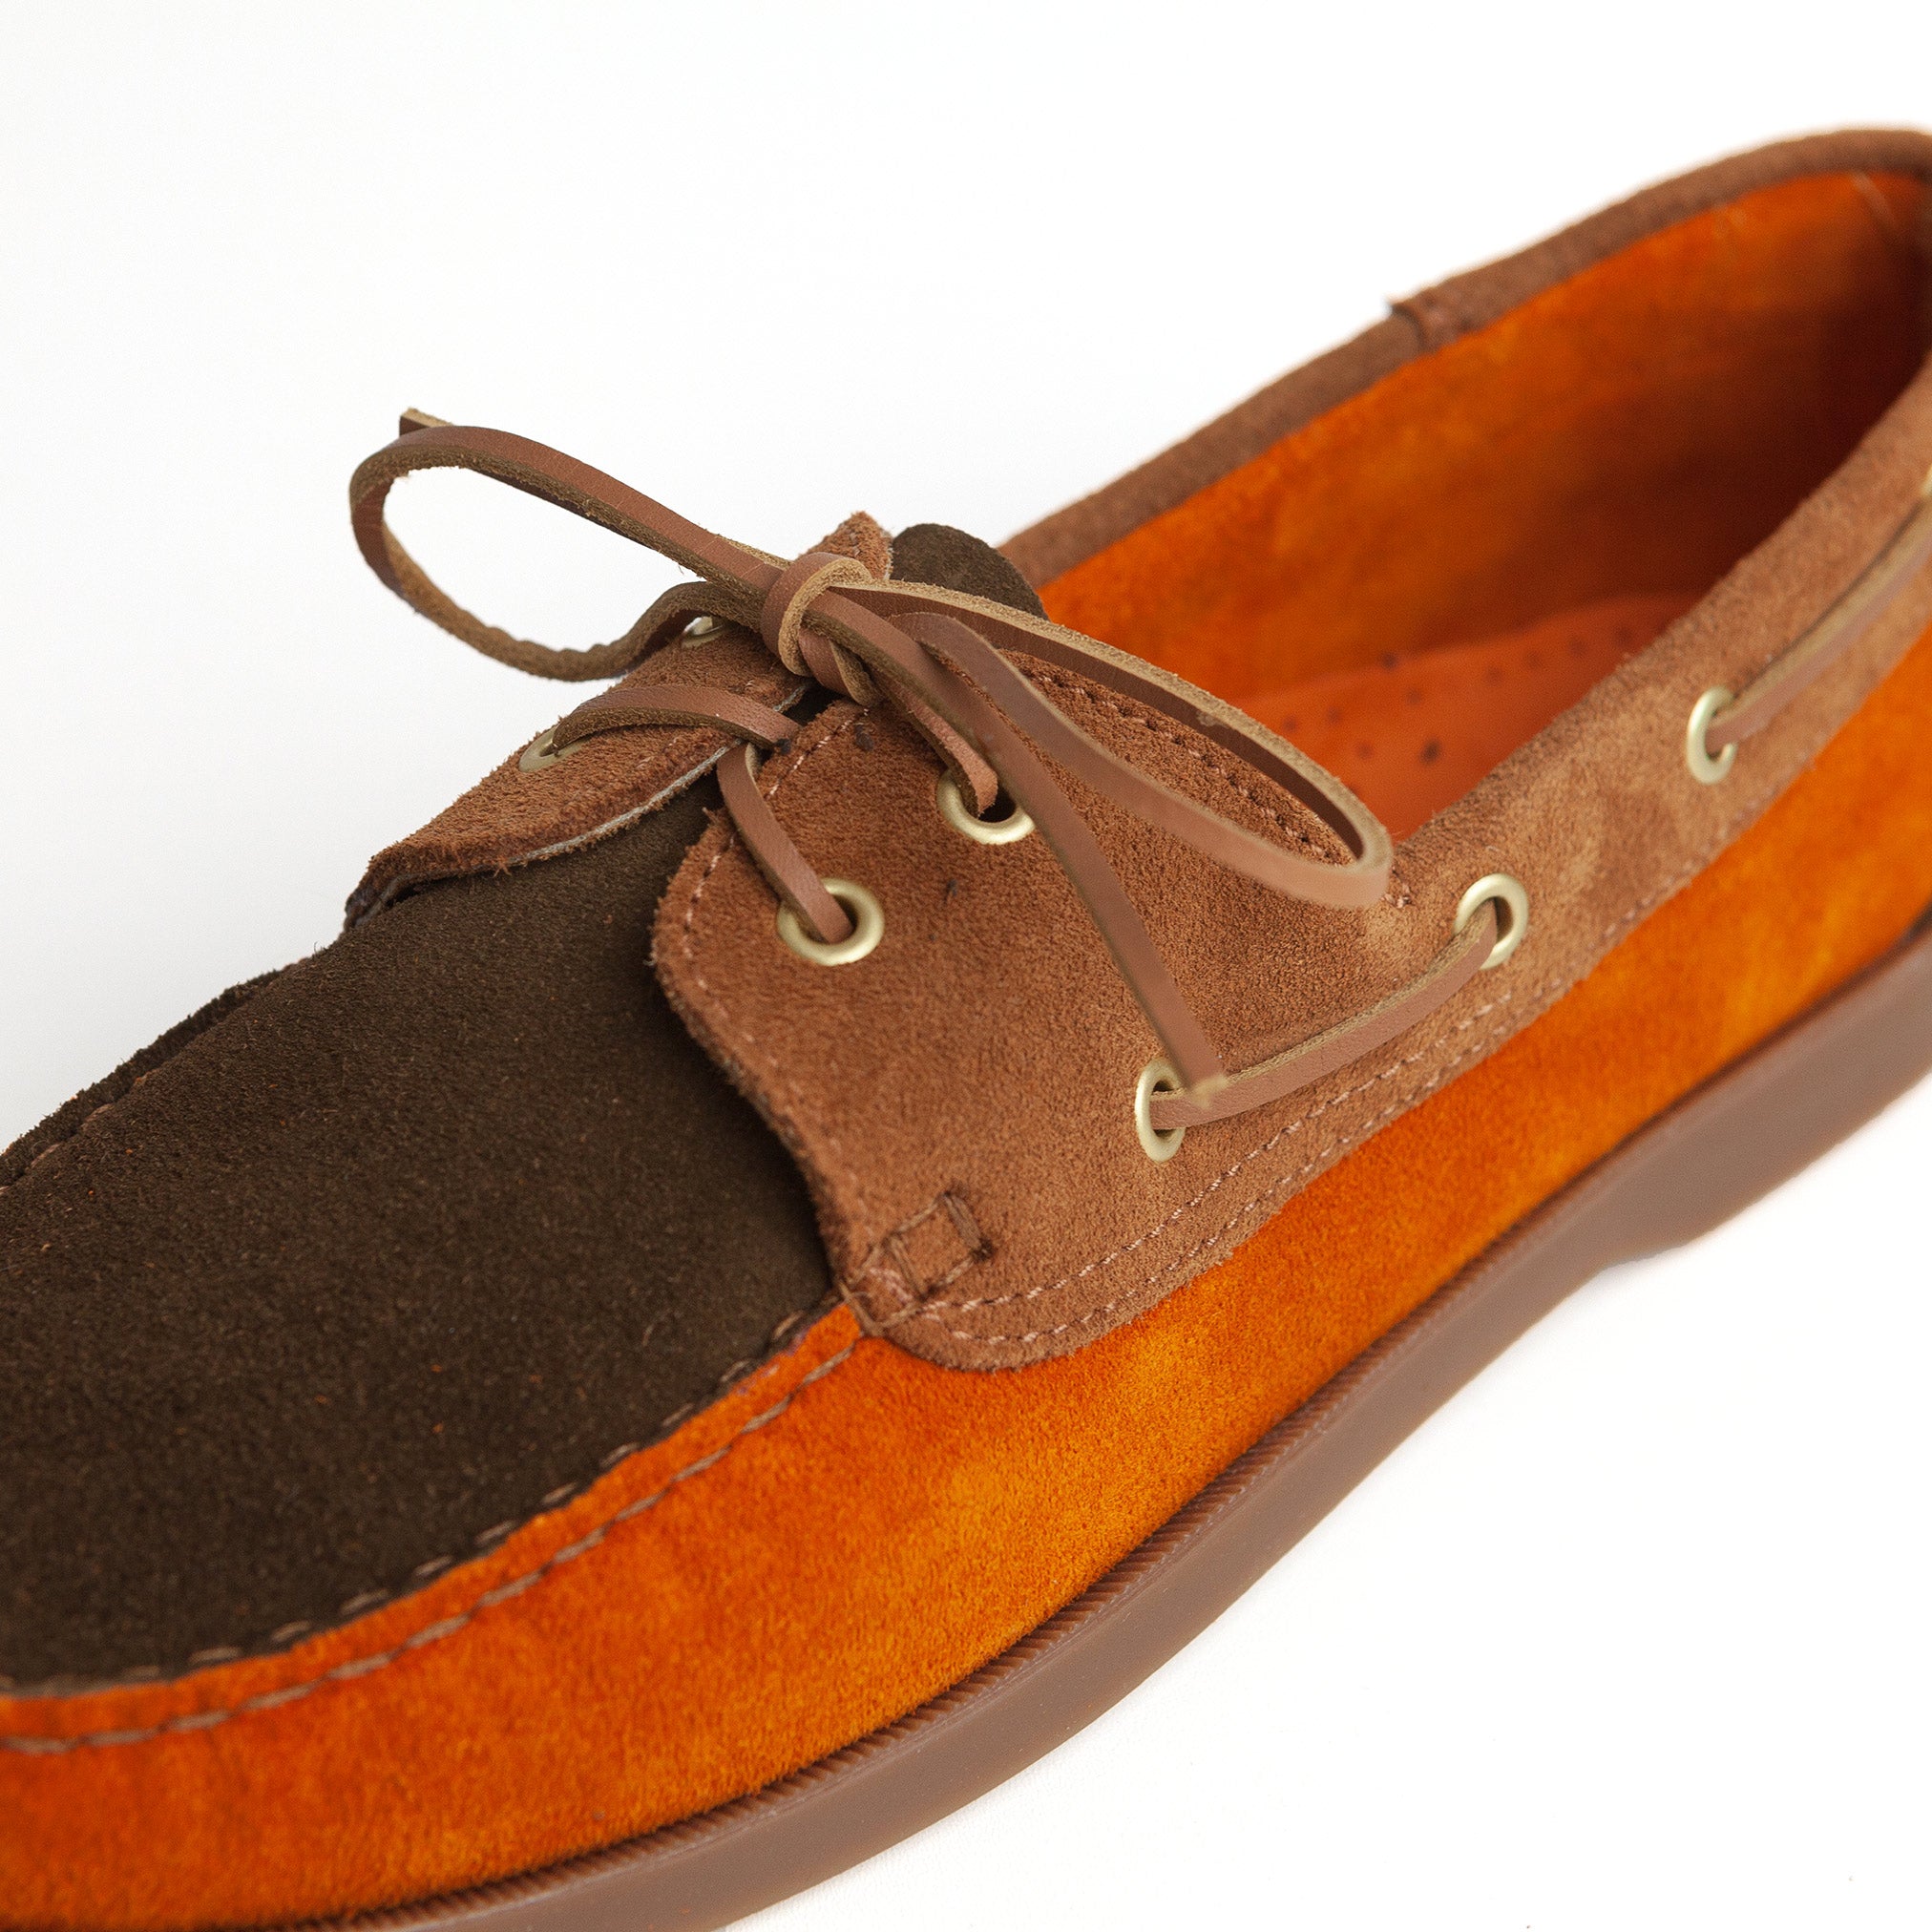 Deck Shoe in Brown & Rust